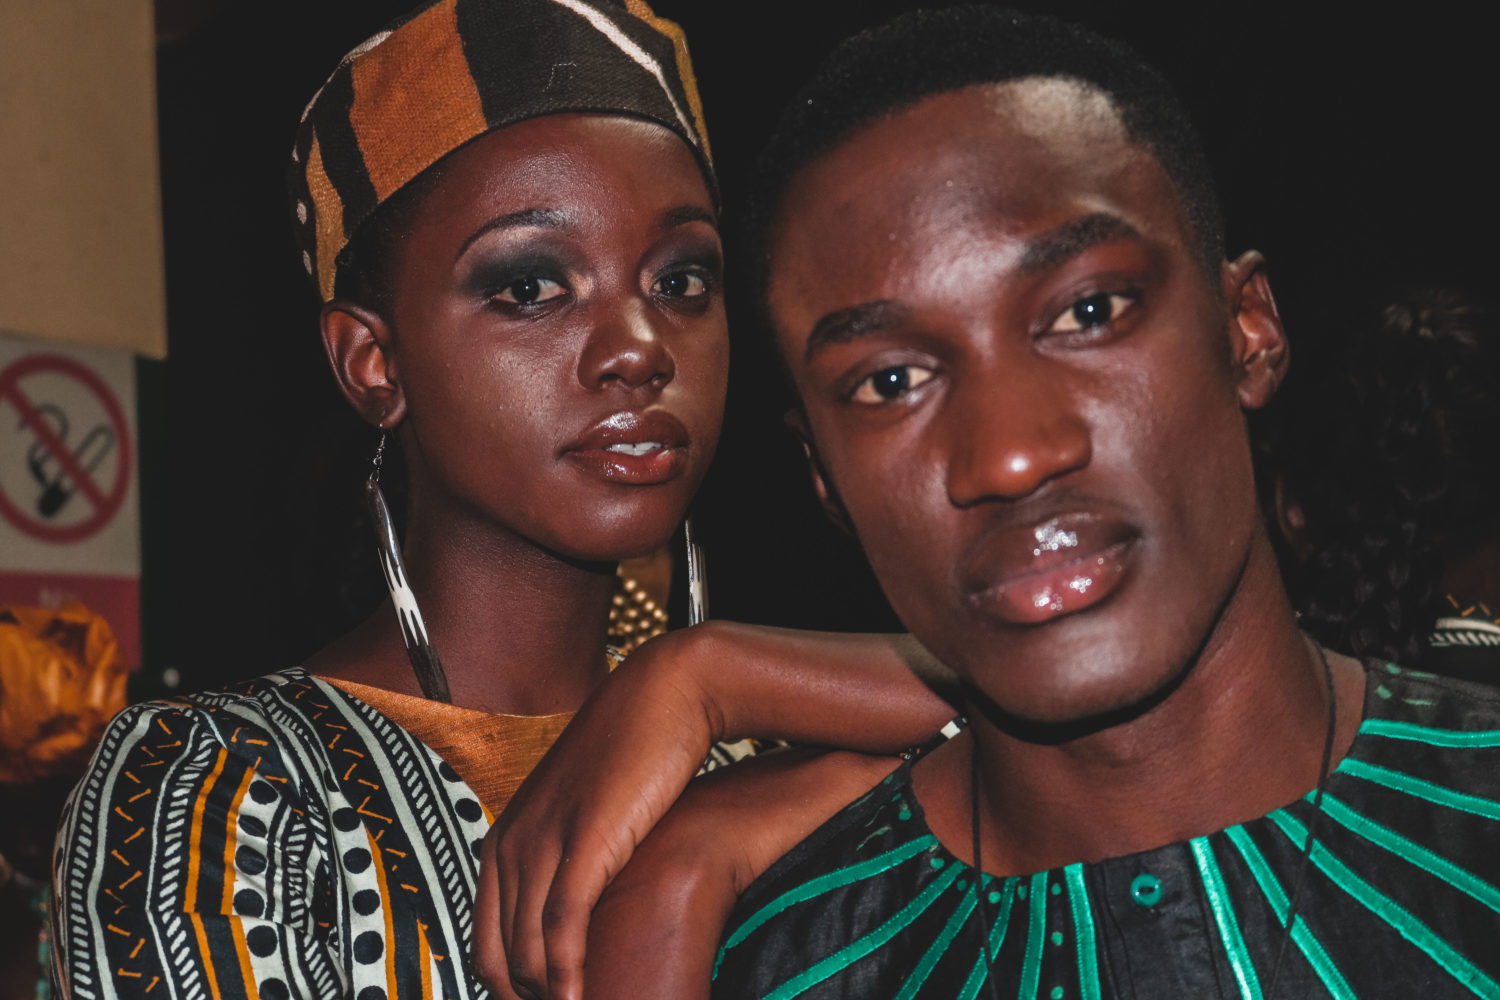 Behind the Scenes at Kampala Fashion Week 2018